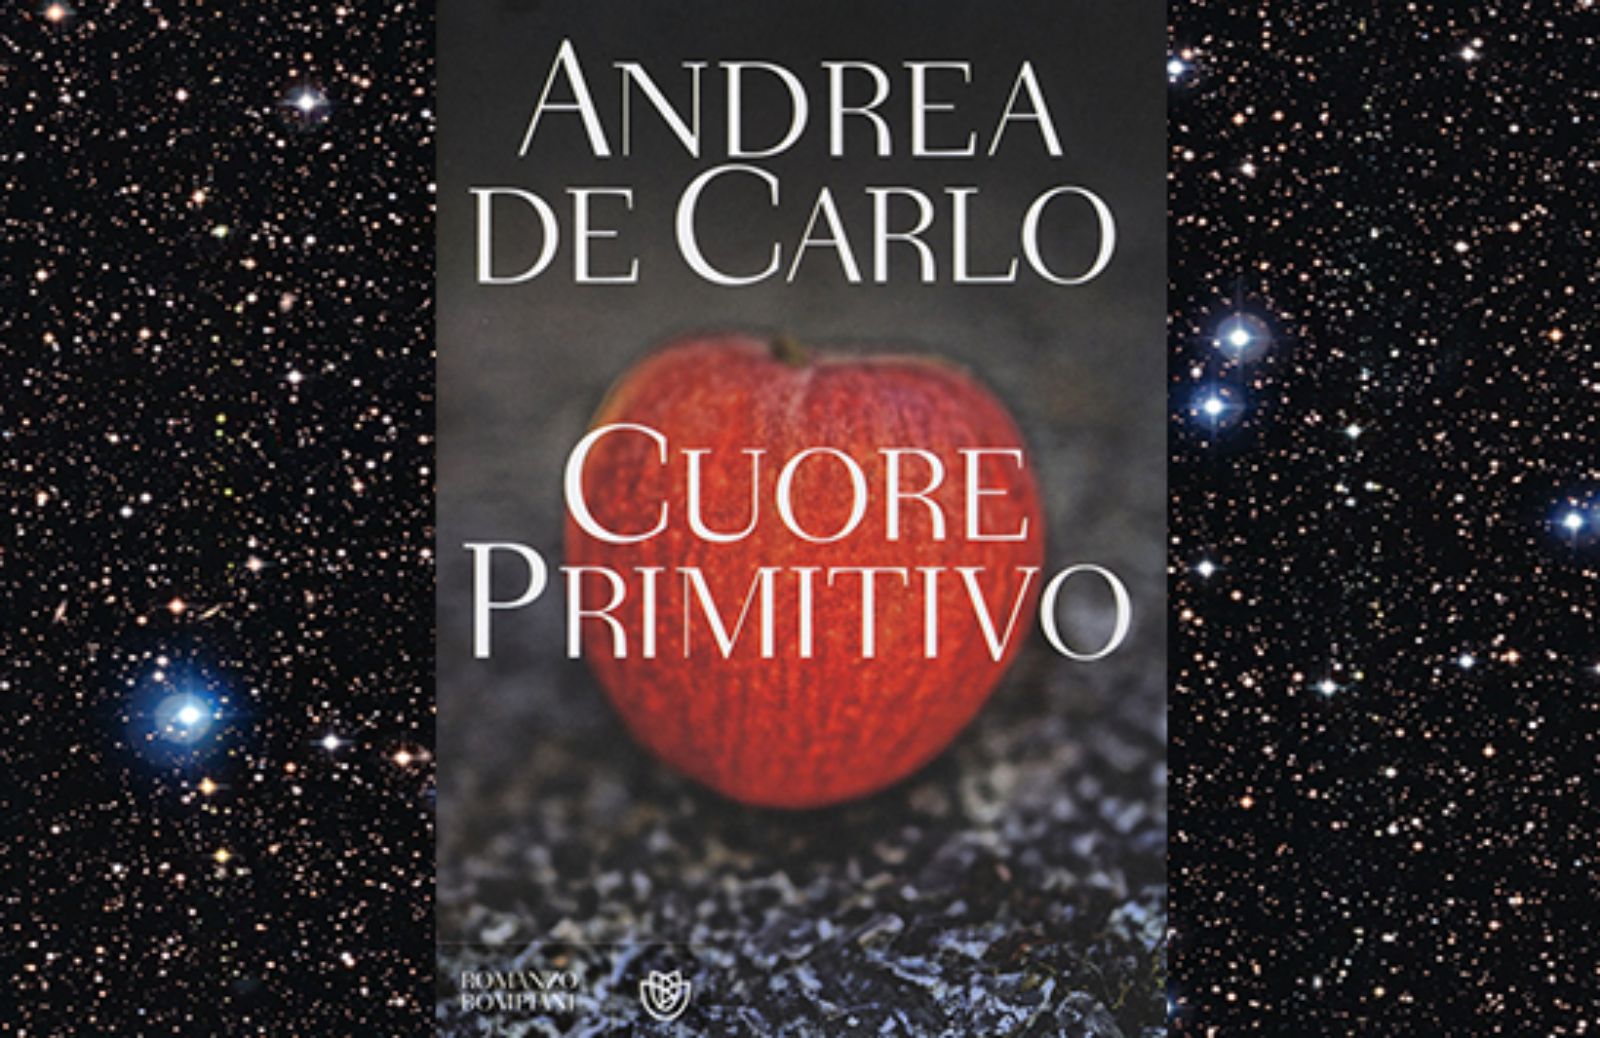 Cuore primitivo, l'ultimo libro di Andrea De Carlo